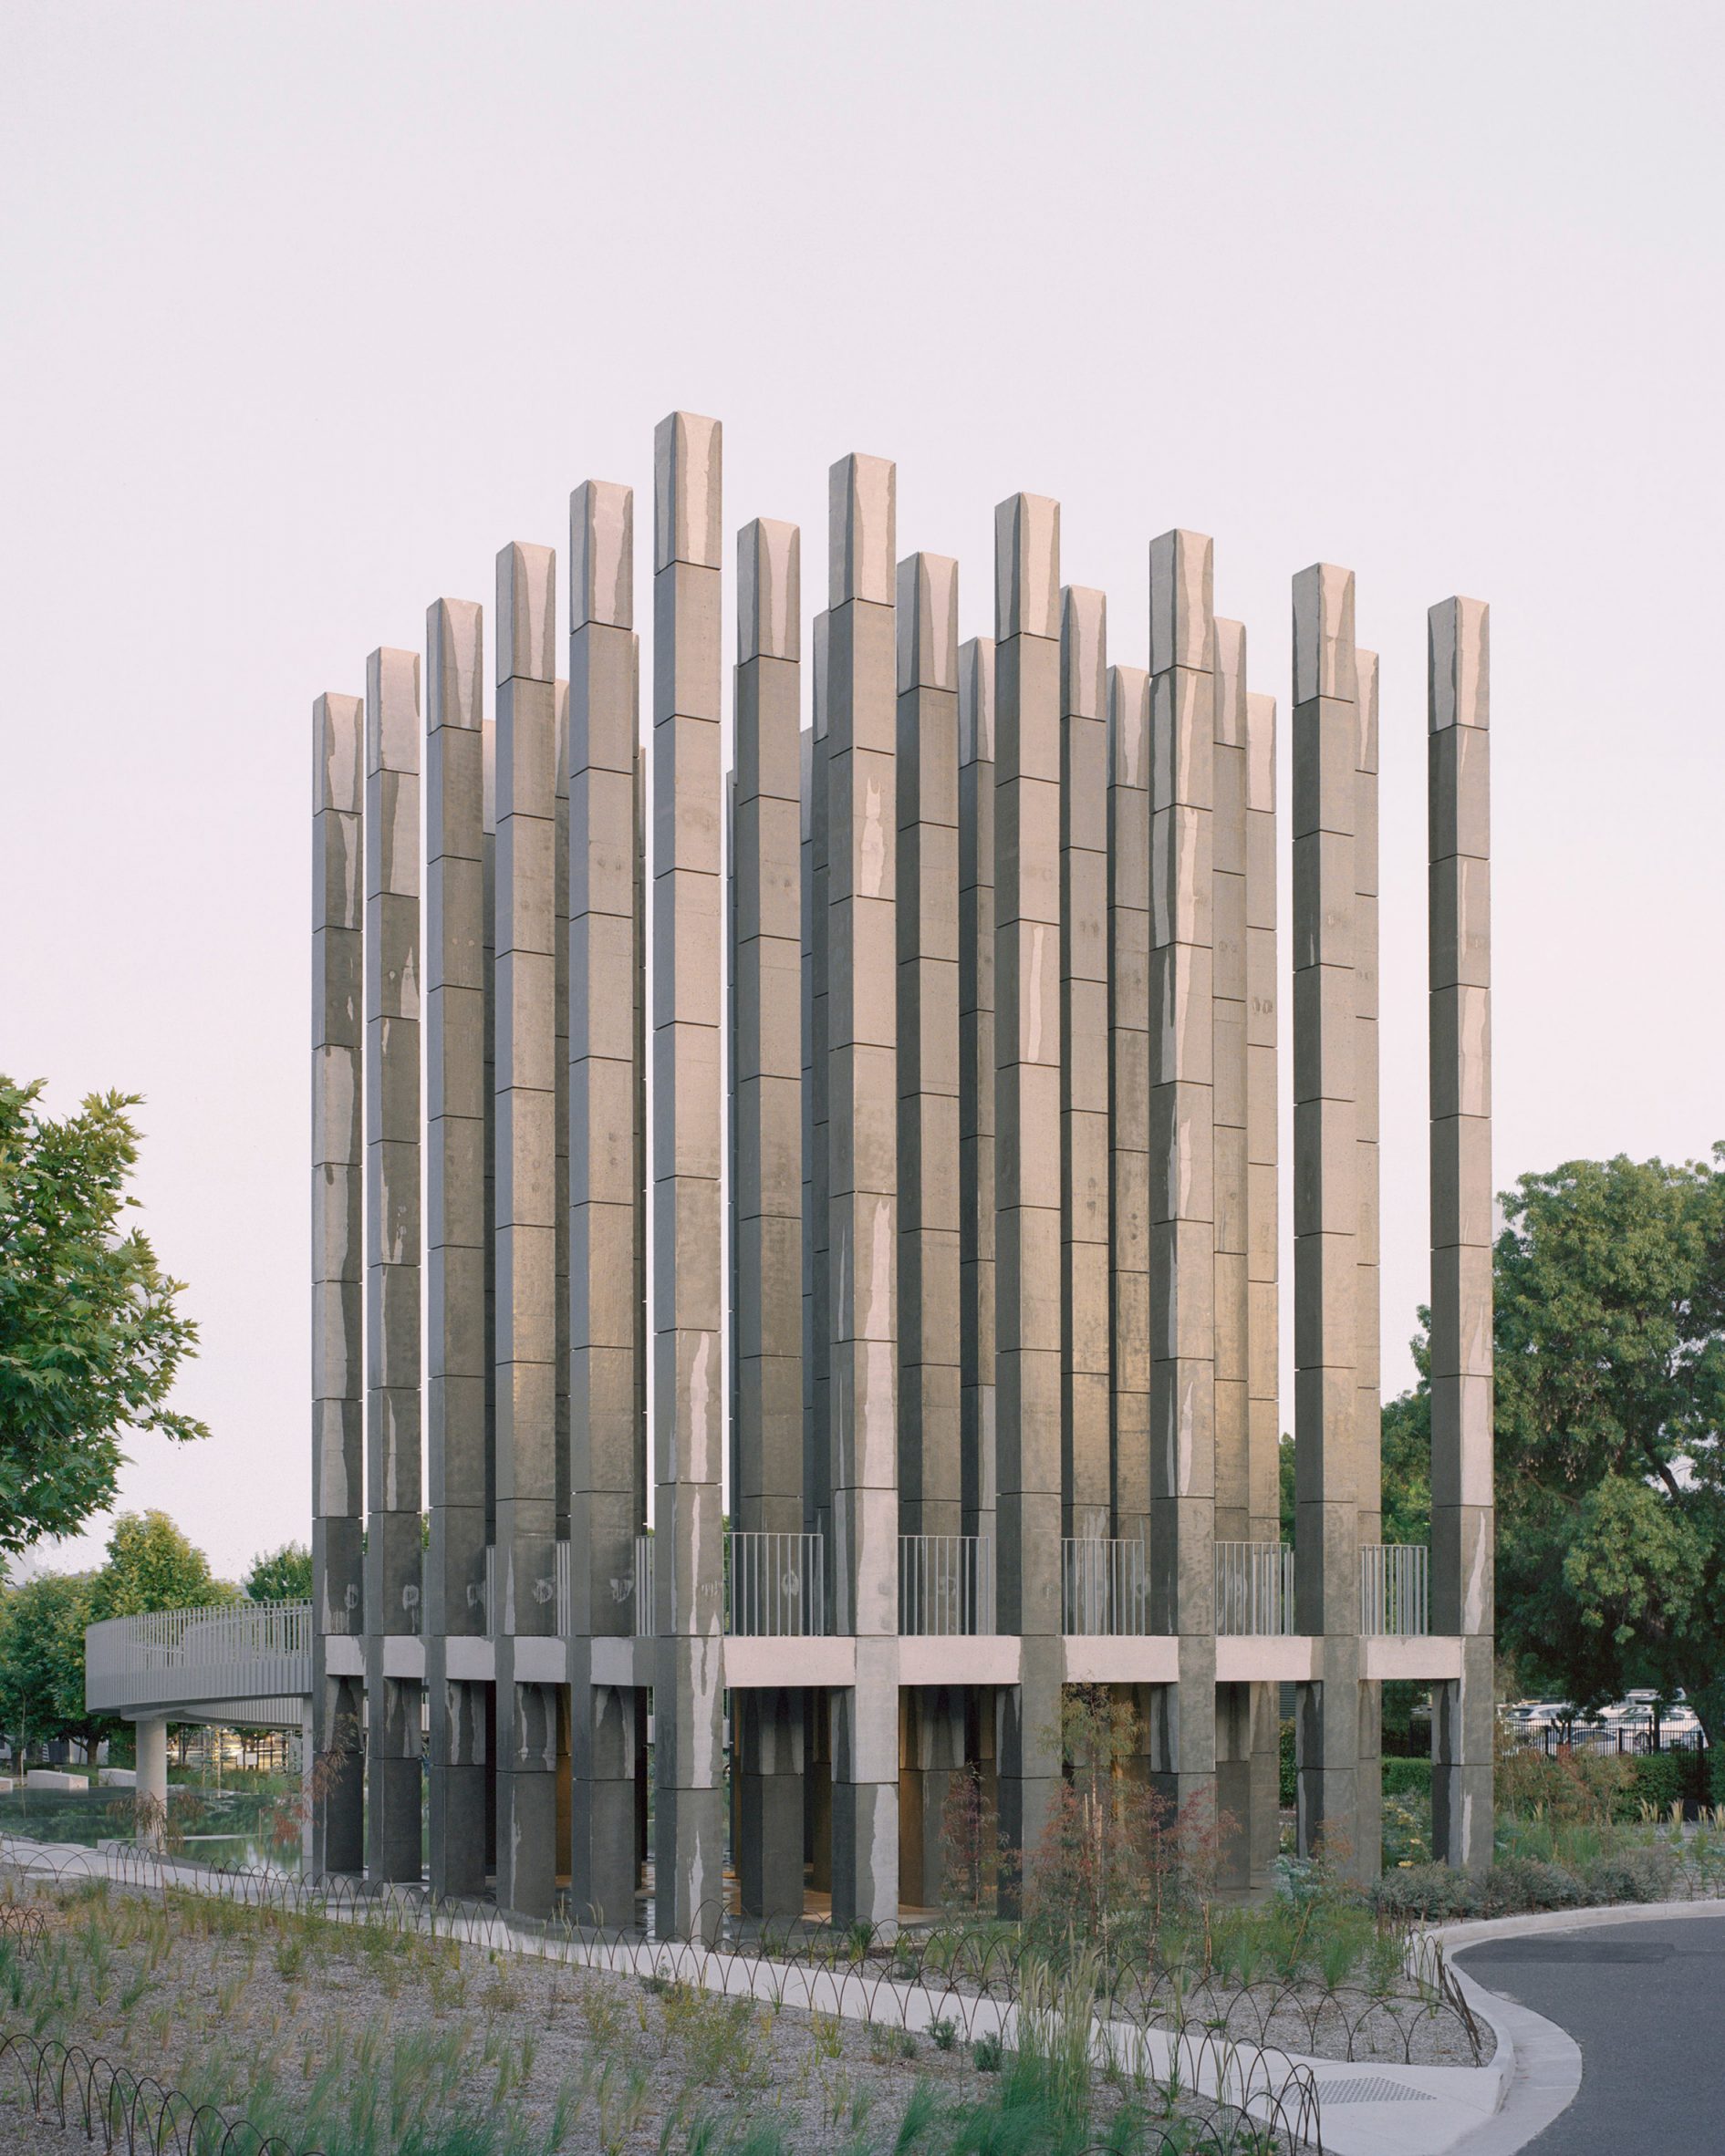 Pezo von Ellrichshausen creates monolithic Less pavilion in Canberra